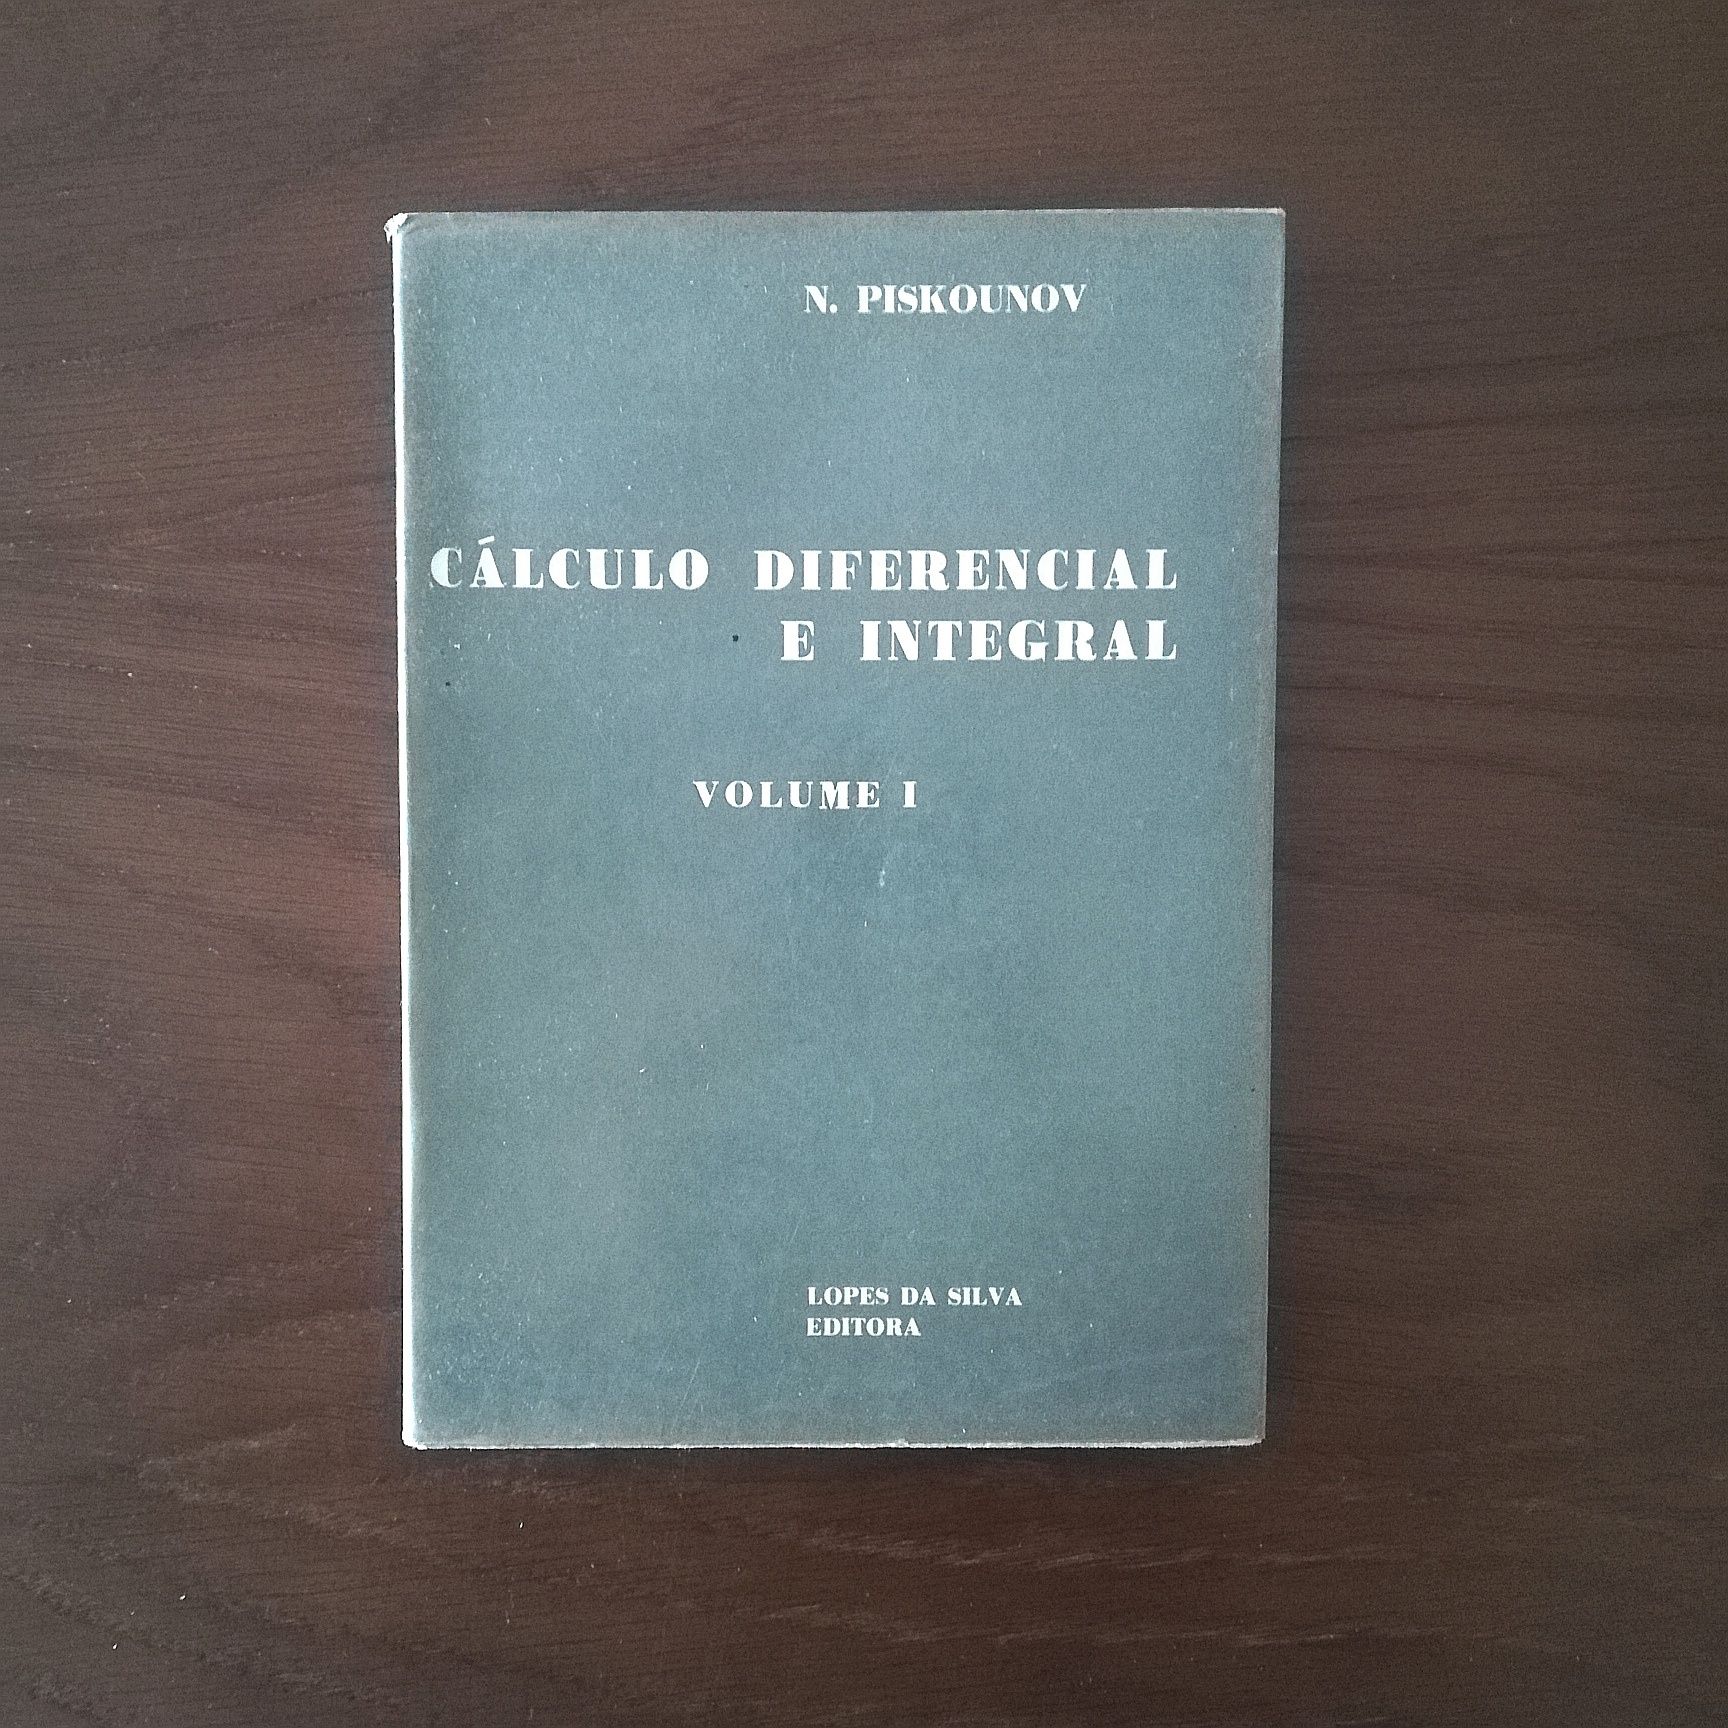 "Cálculo diferencial e integral", volume I, N. Piskounov, 1975